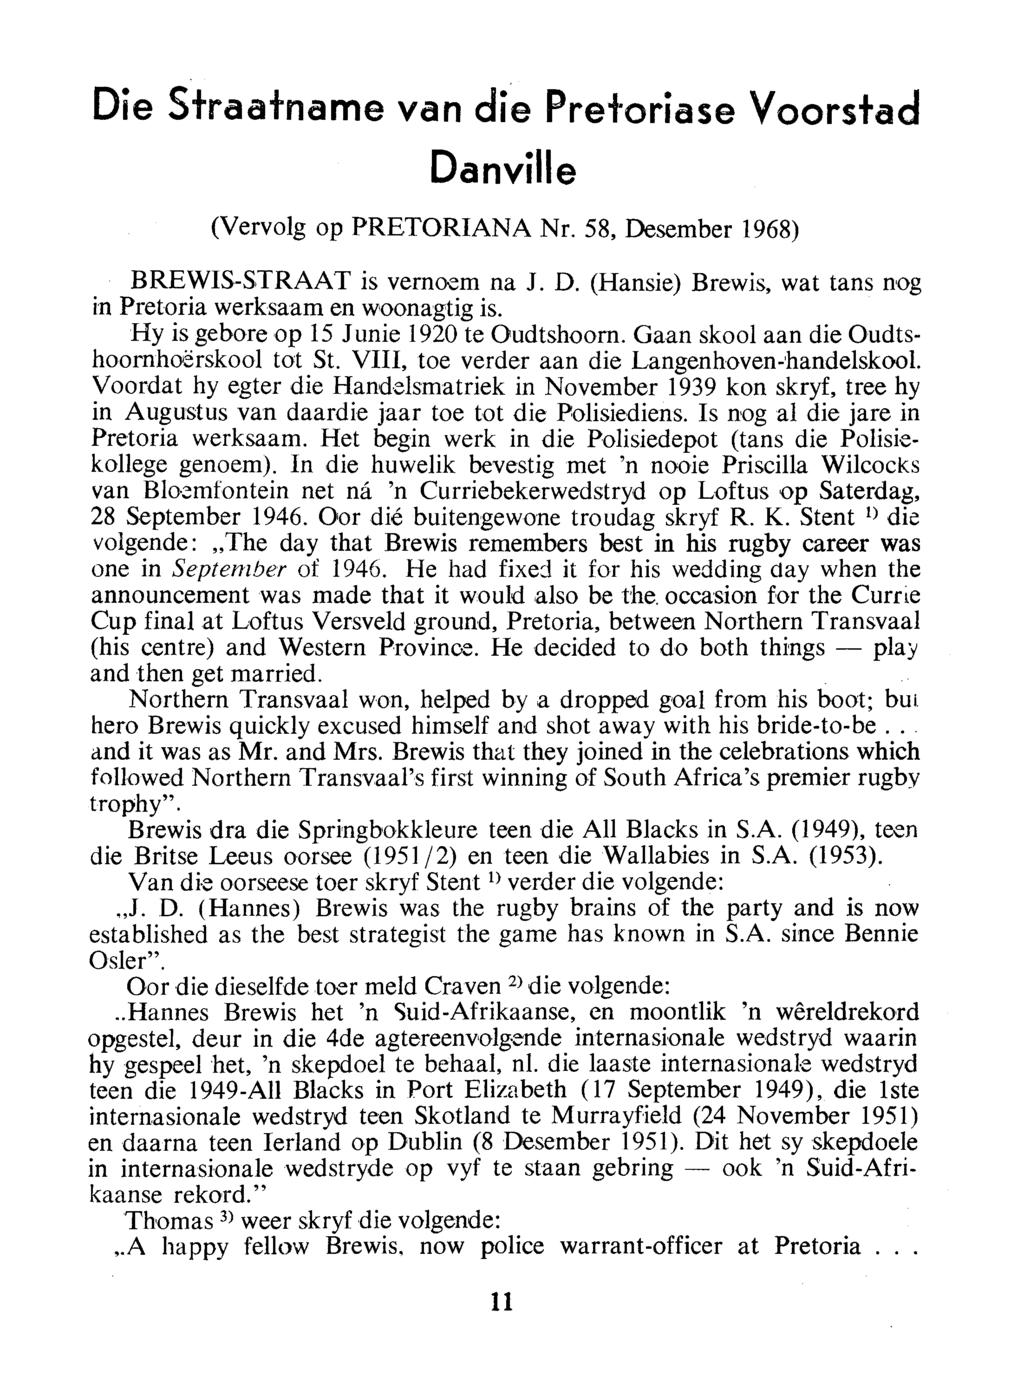 Die Straatname van die Prei'oriase Voorstad Danville (Vervolg op PRETORIANA Nr. 58, Desember 1968) BREWIS-STRAAT is vernoem na J. D. (Hansie) Brewis, wat tans nog in Pretoria werksaam en woonagtig is.